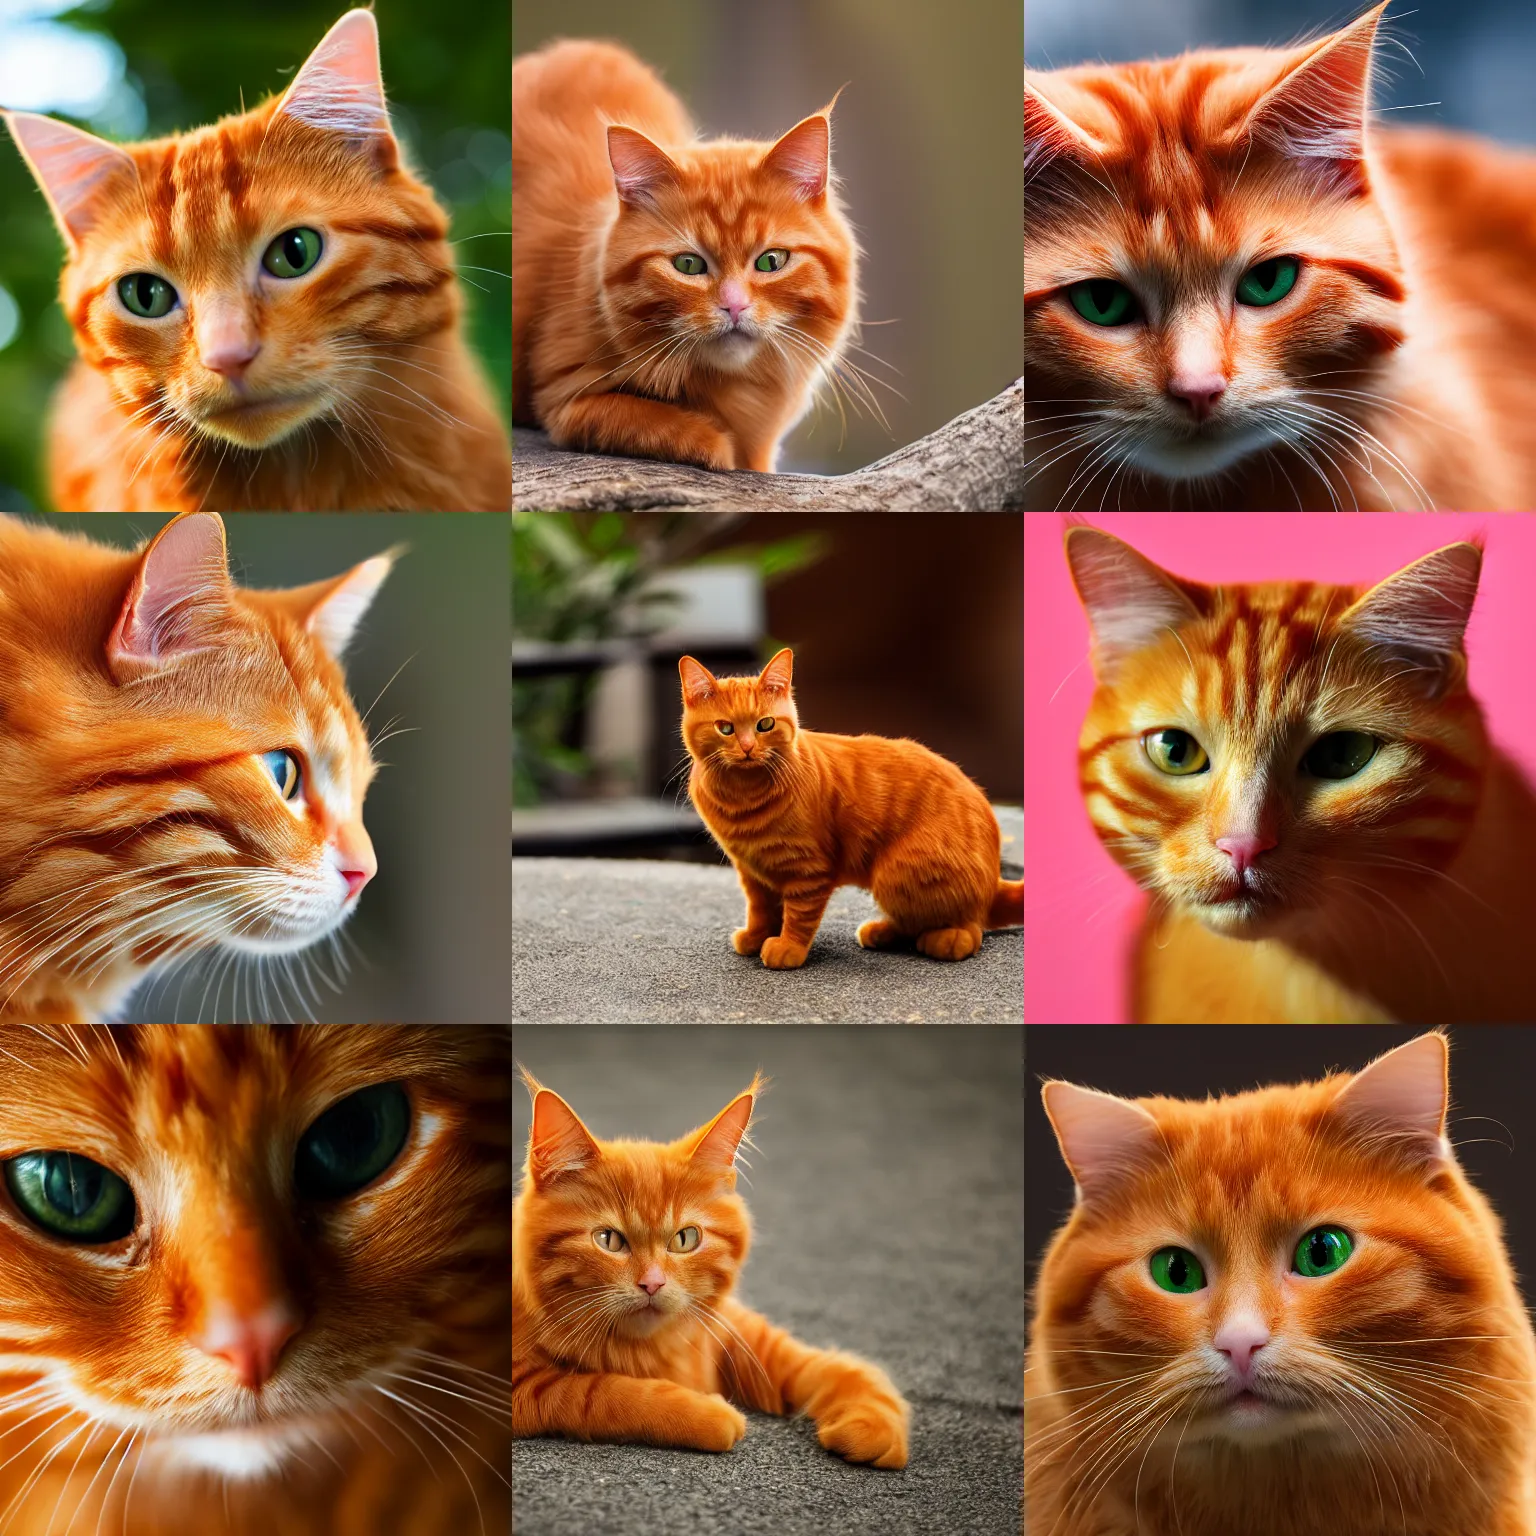 Prompt: ginger cat. 8K resolution